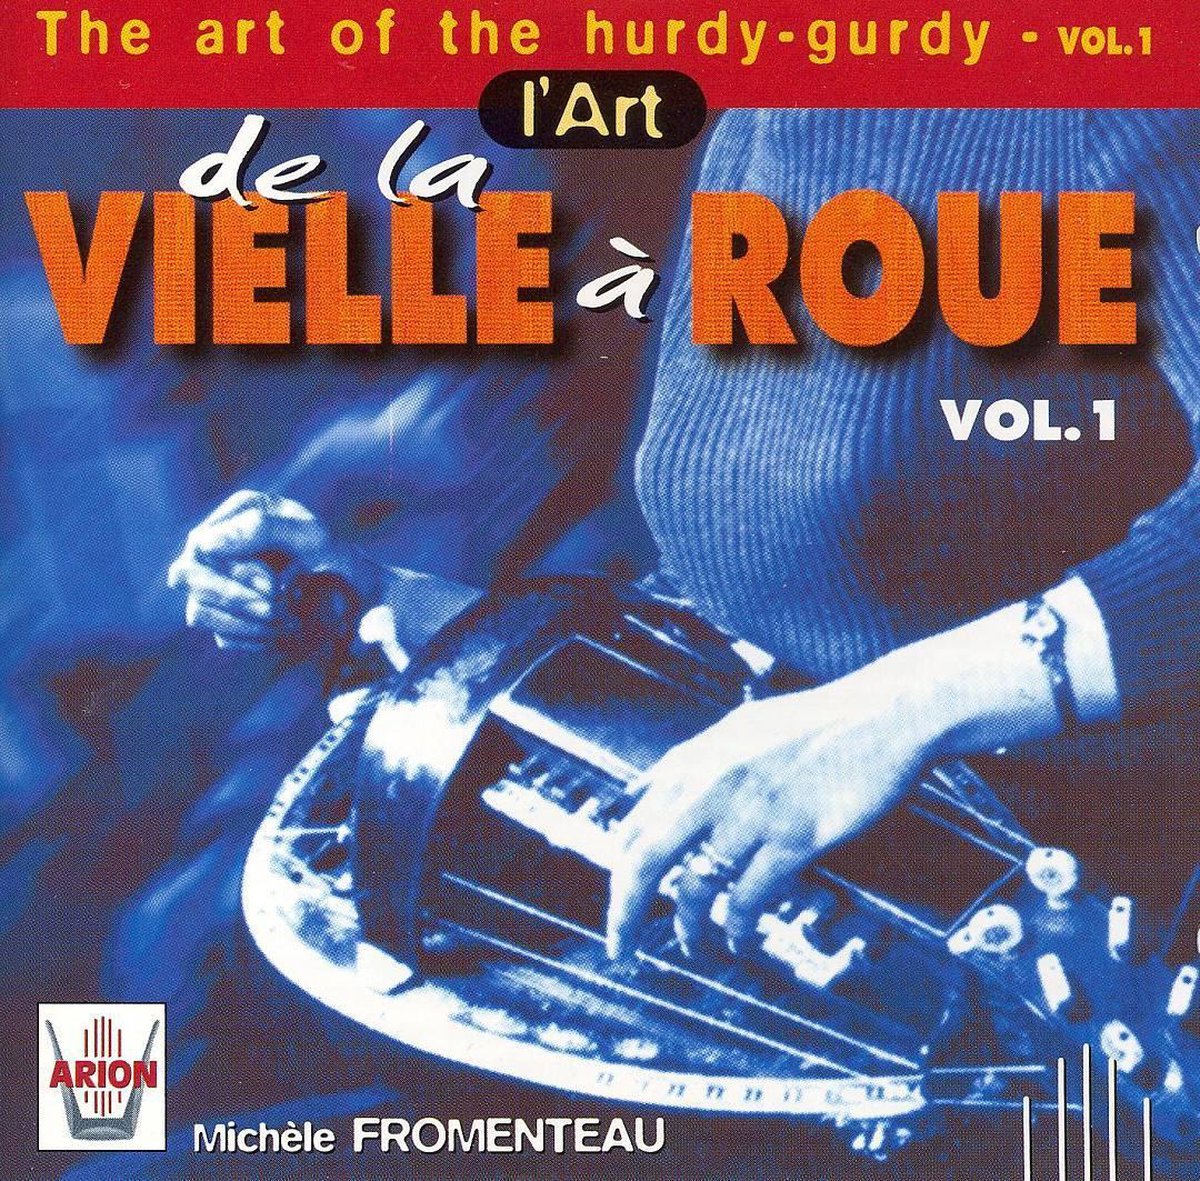 The Art of the Hurdy-Gurdy Vol 1 / Fromenteau, et al - Michele Fromenteau